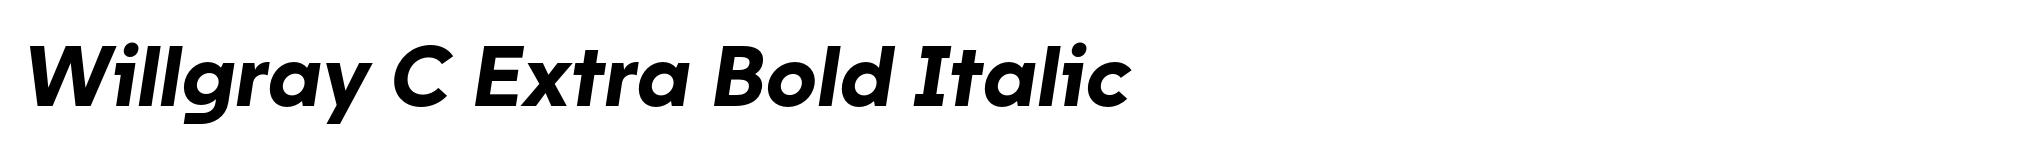 Willgray C Extra Bold Italic image